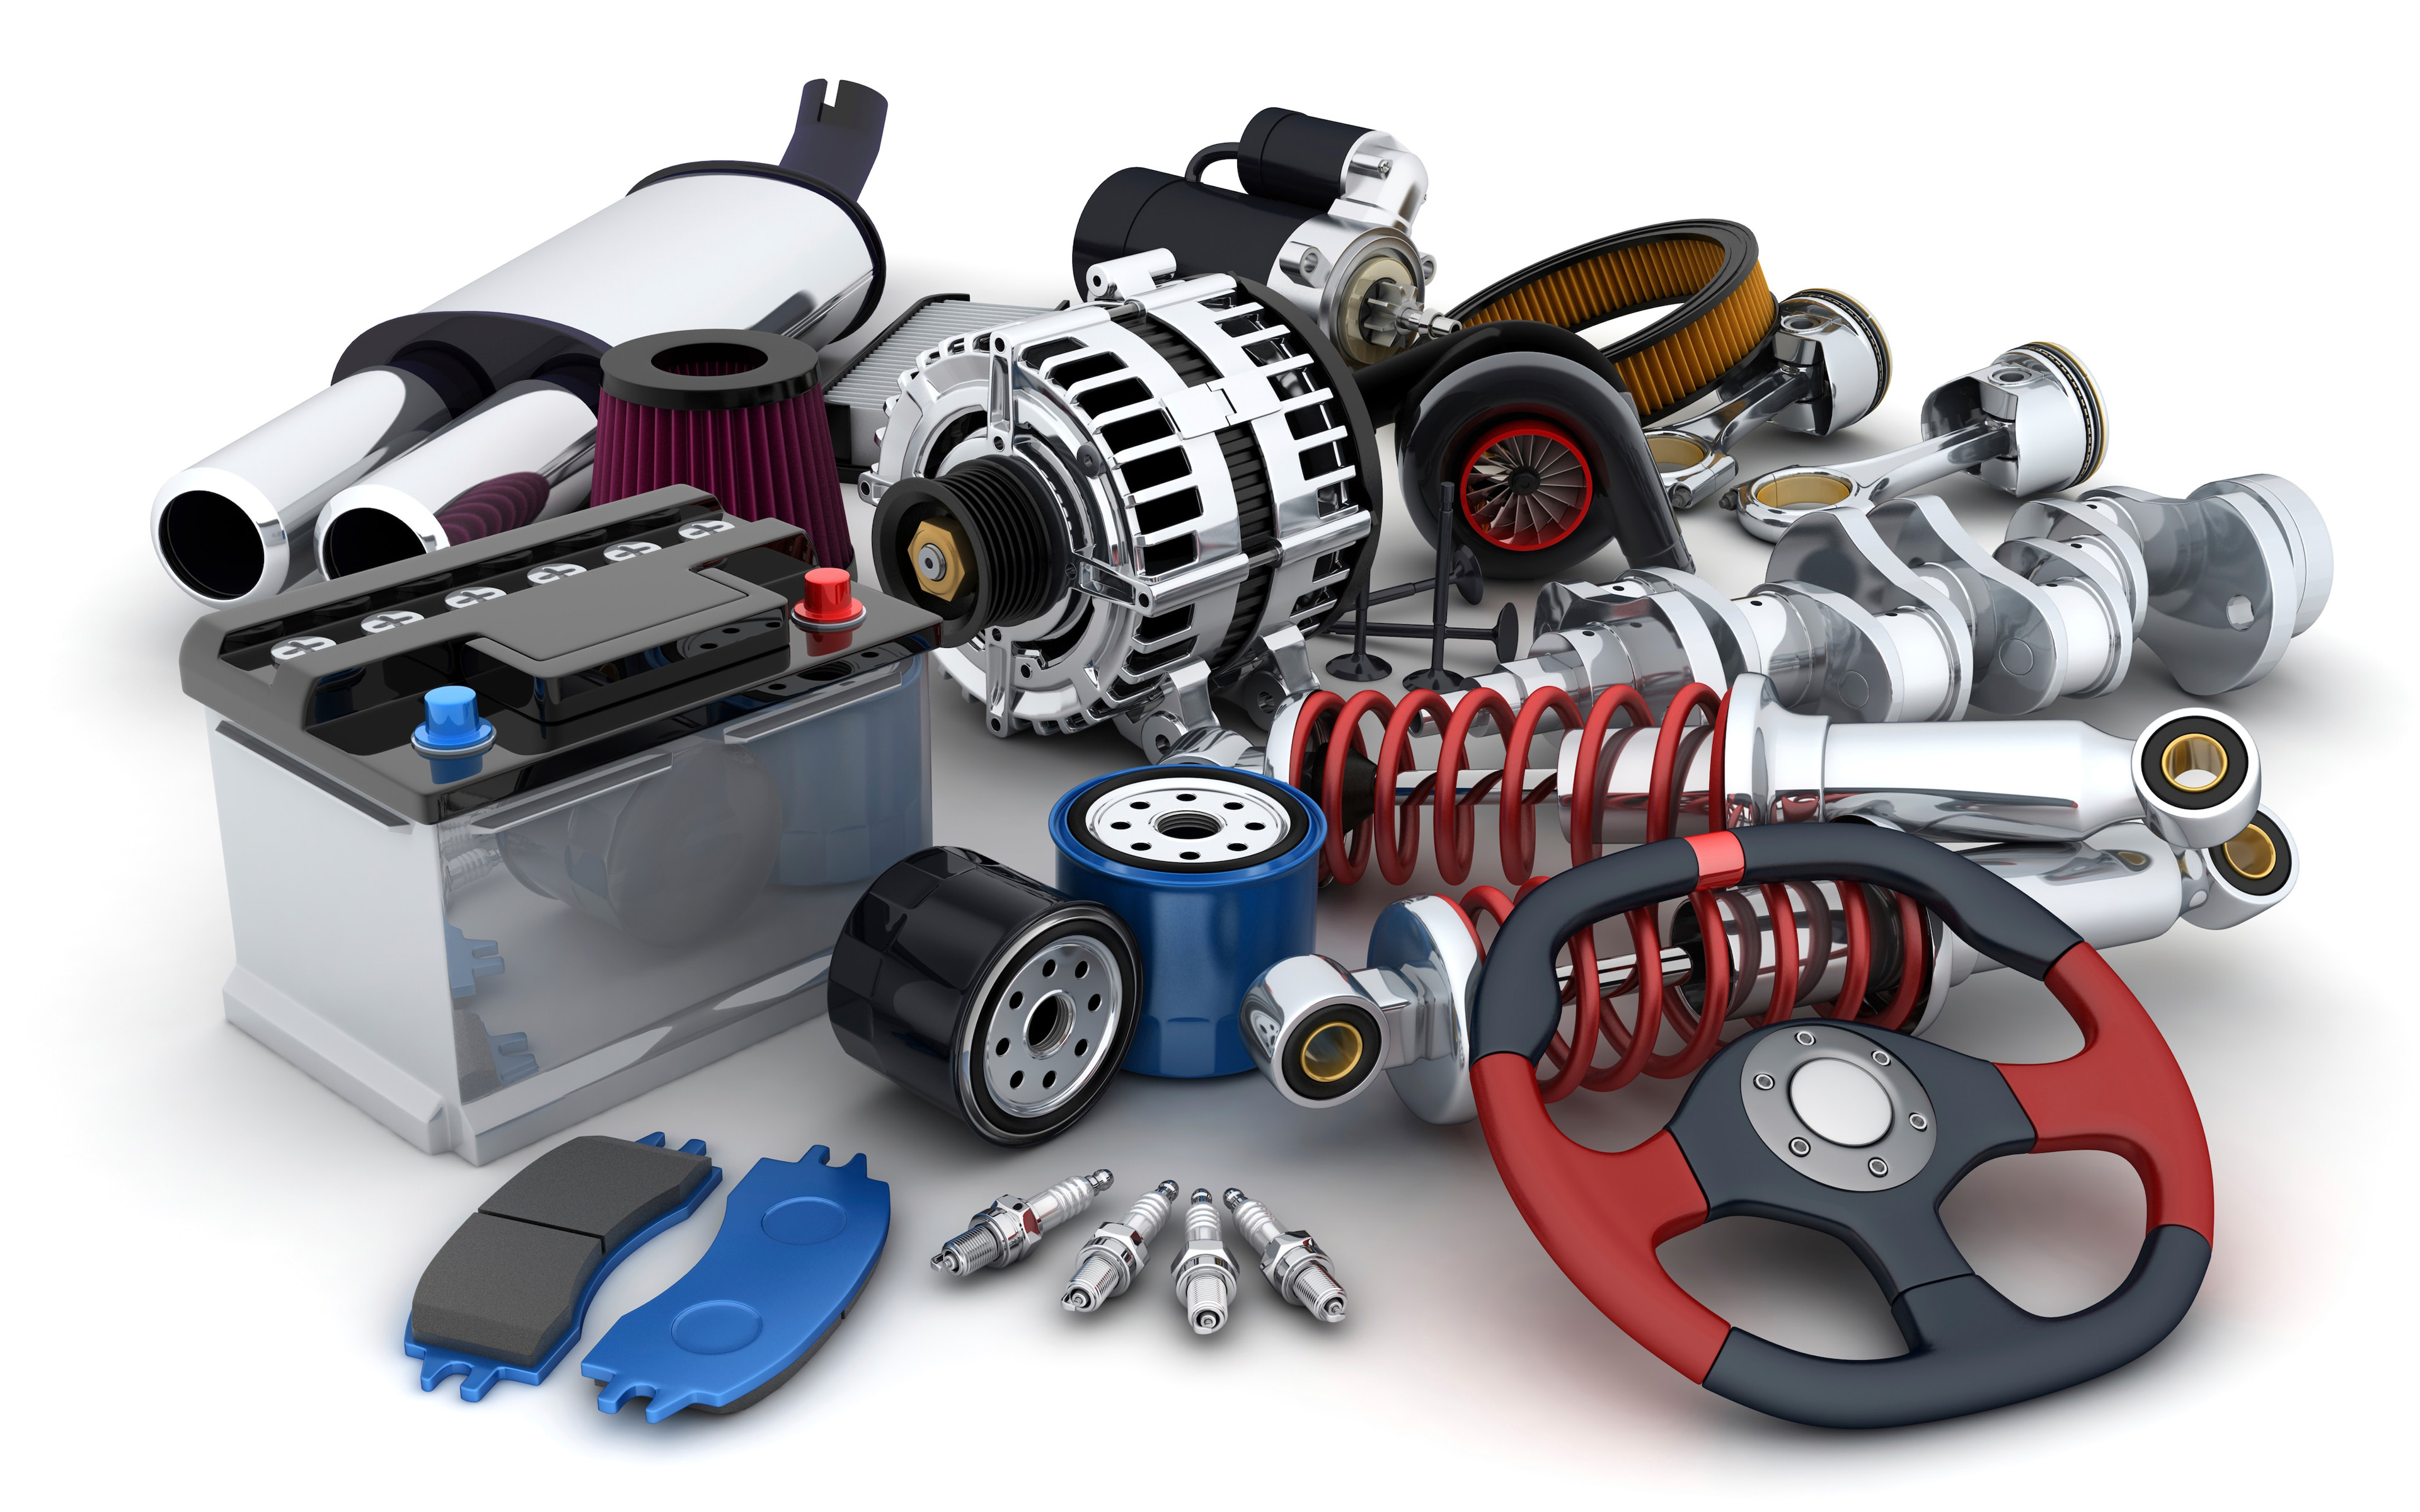 Download wallpaper 3D car parts, car repair concepts, car parts